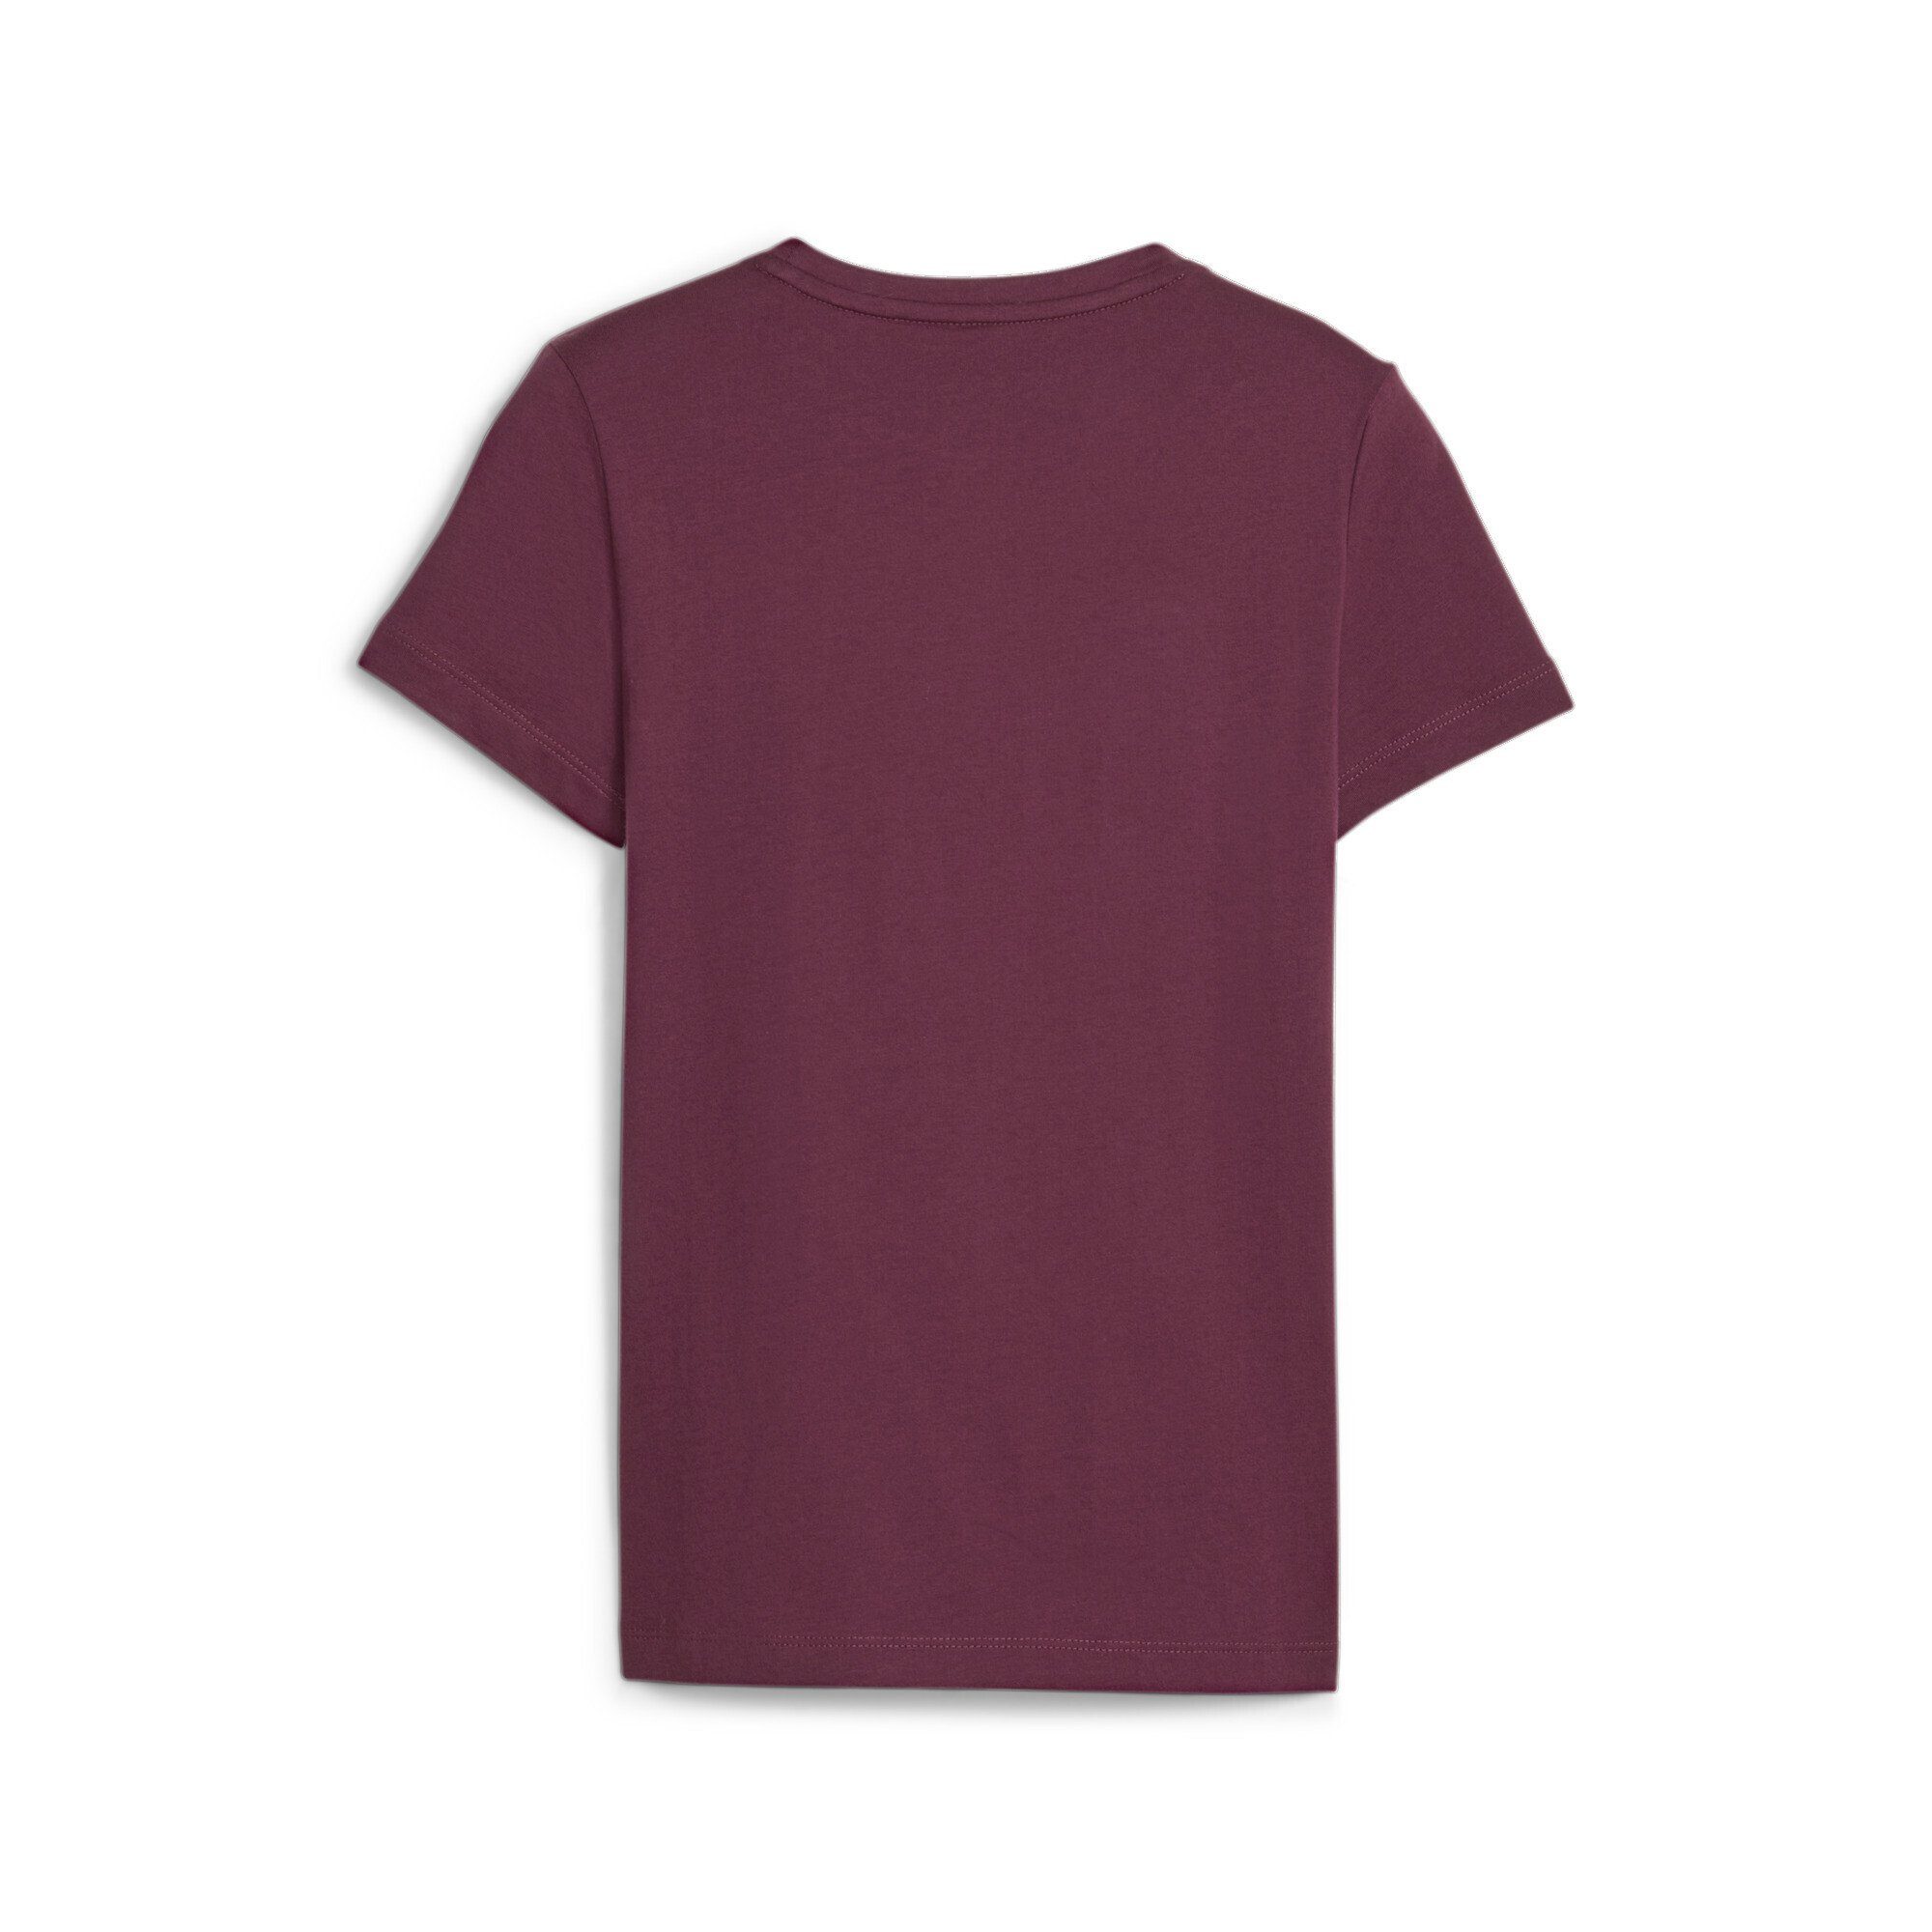 T-Shirt Logo Essentials Dark PUMA T-Shirt Mädchen mit Jasper Red